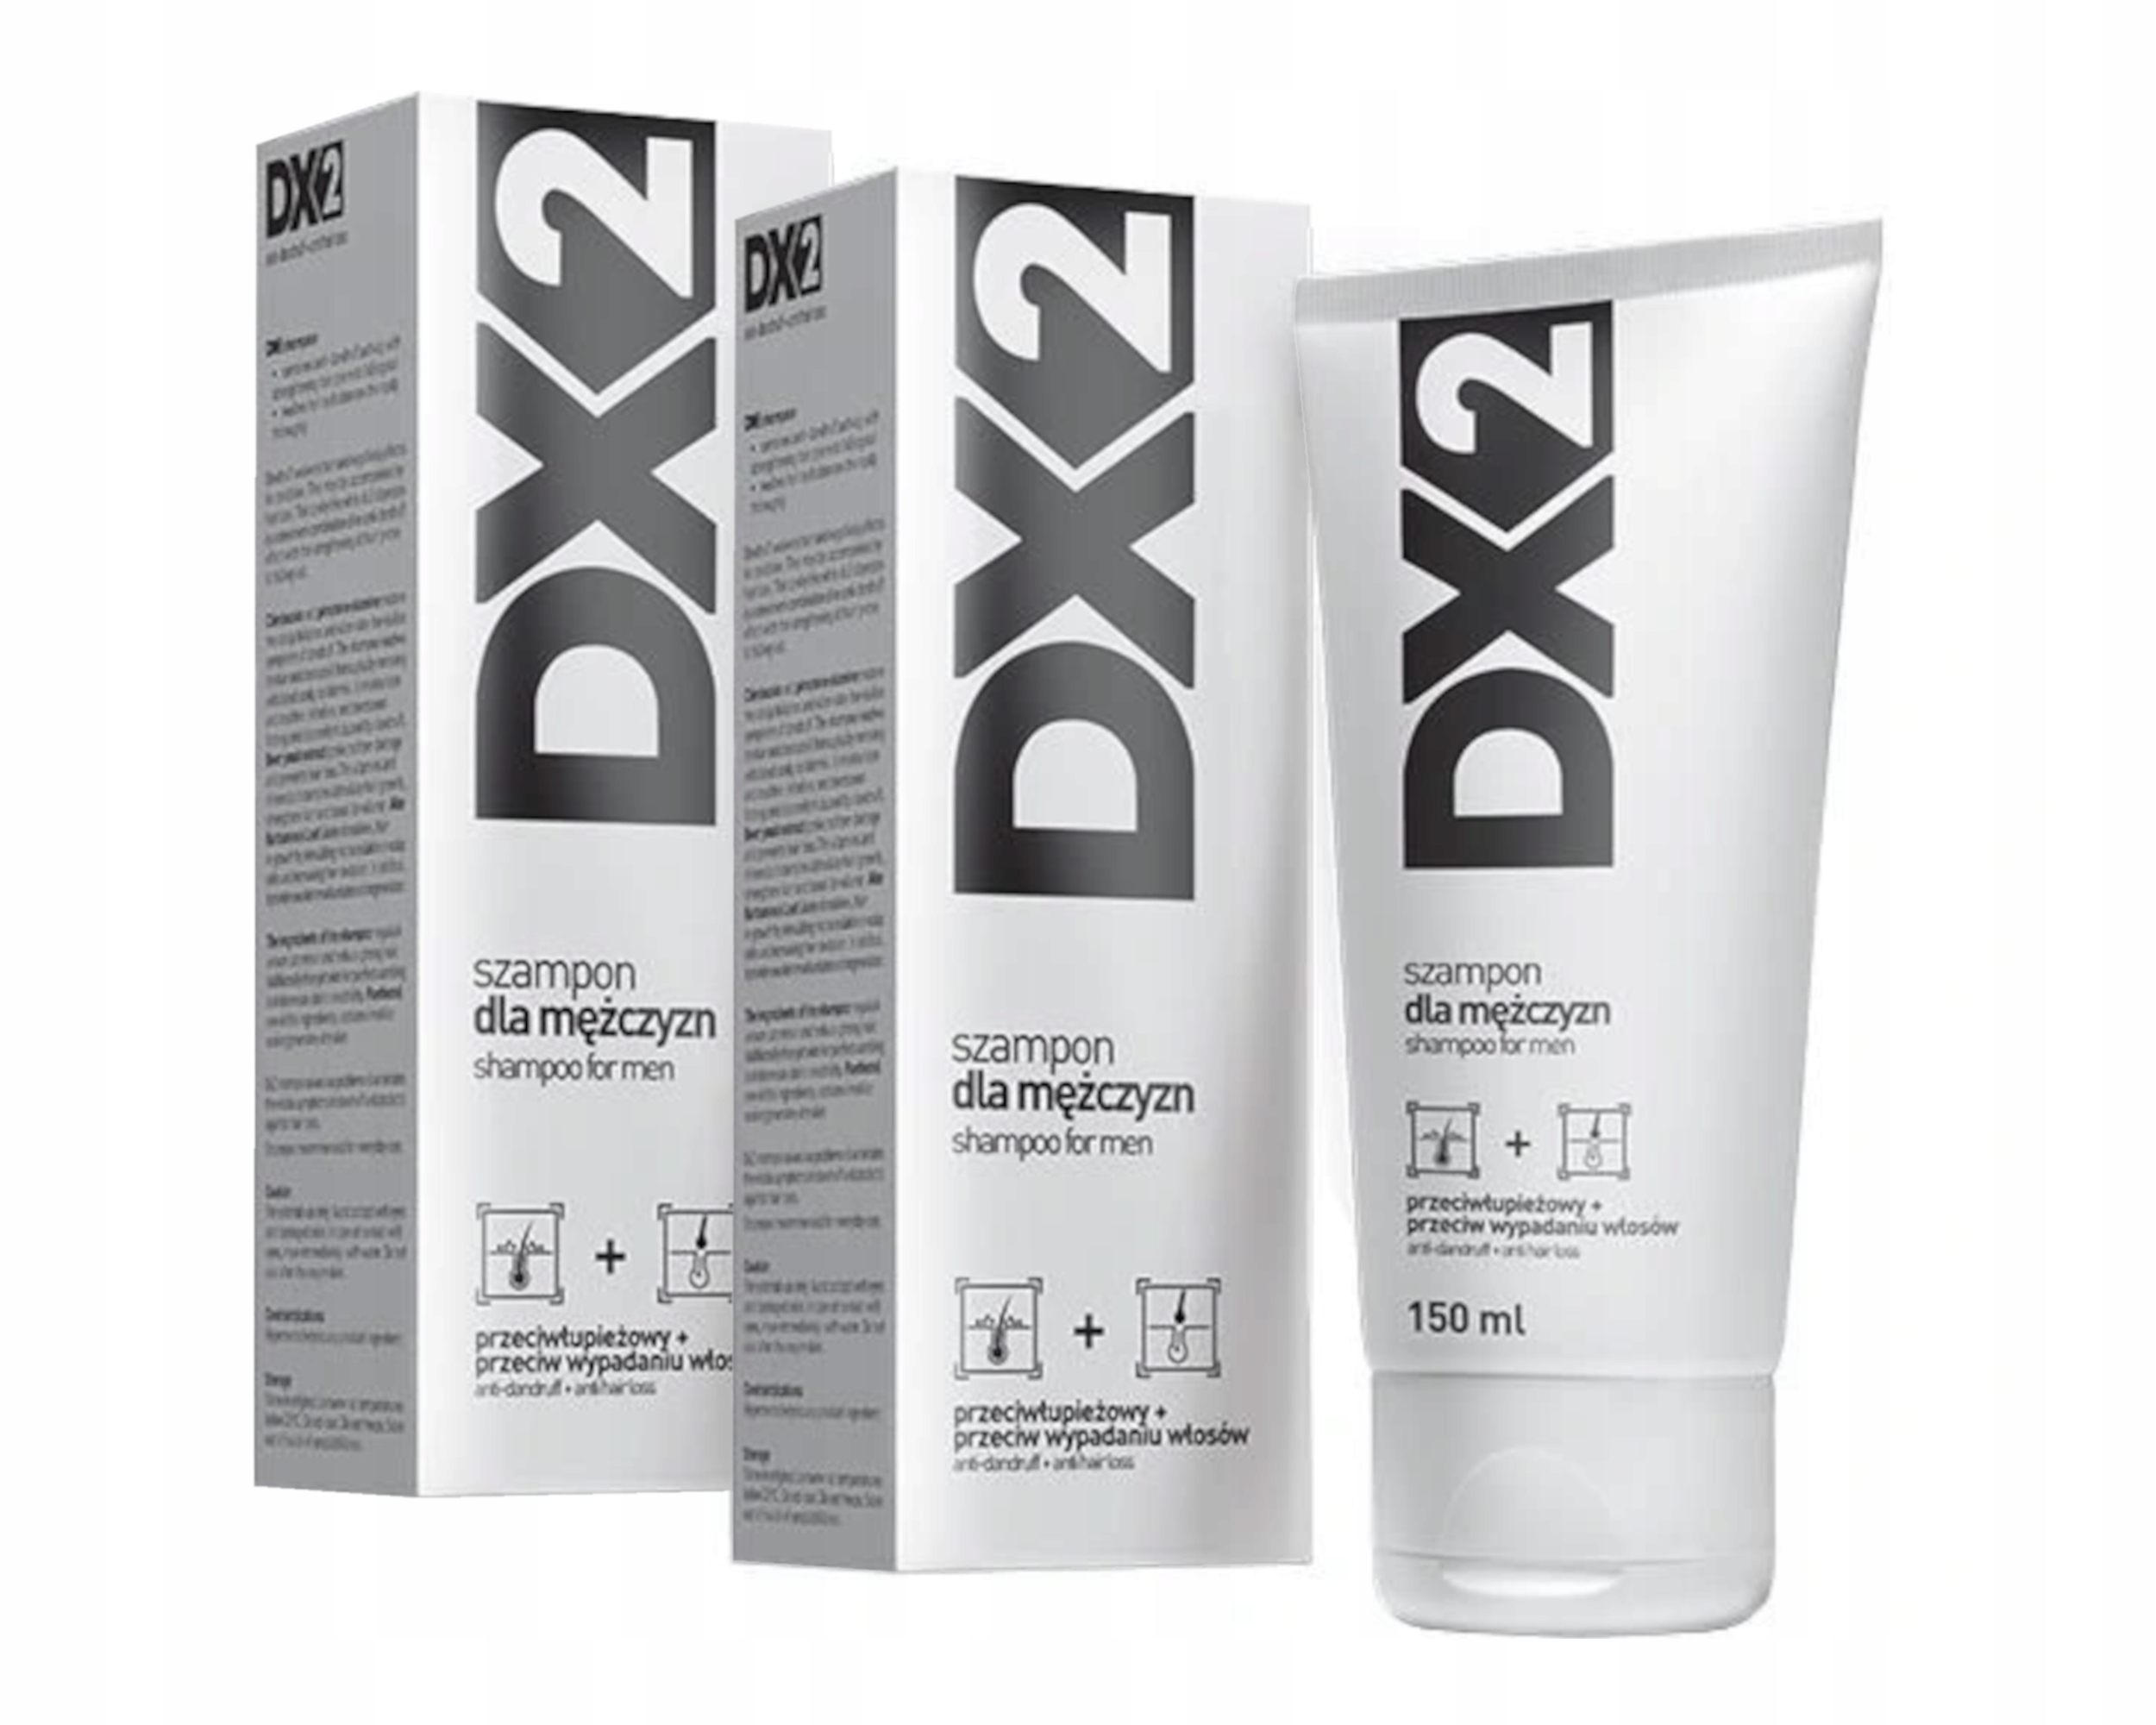 gdzie najtaniej kupić szampon dx2 w srebrnej tubie